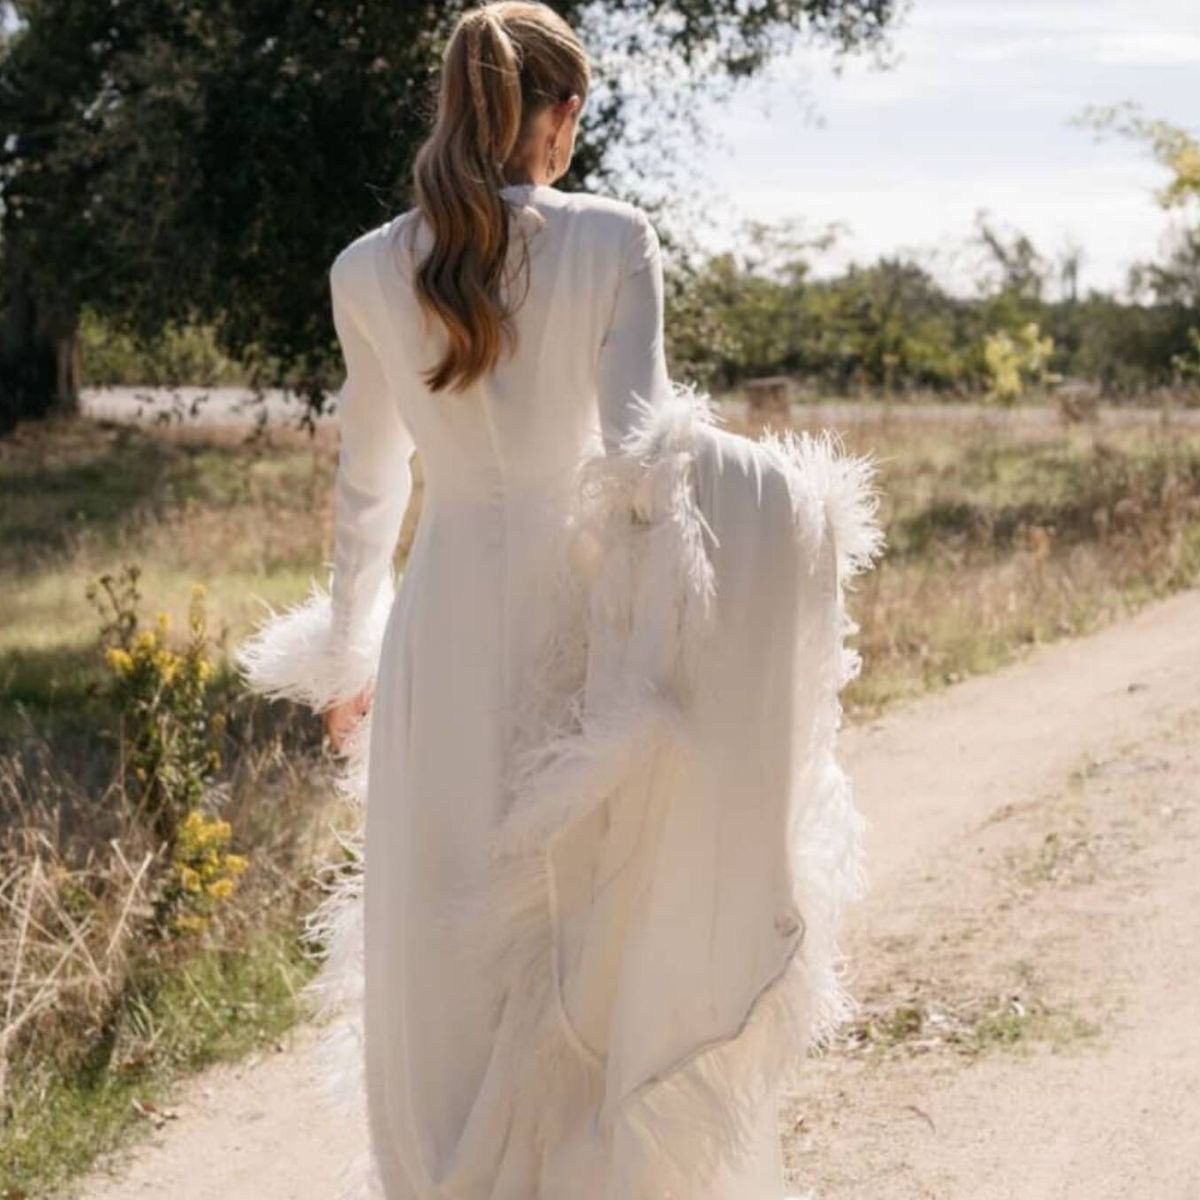 Plumas, la tendencia 2020 para vestidos de novia dinámicos